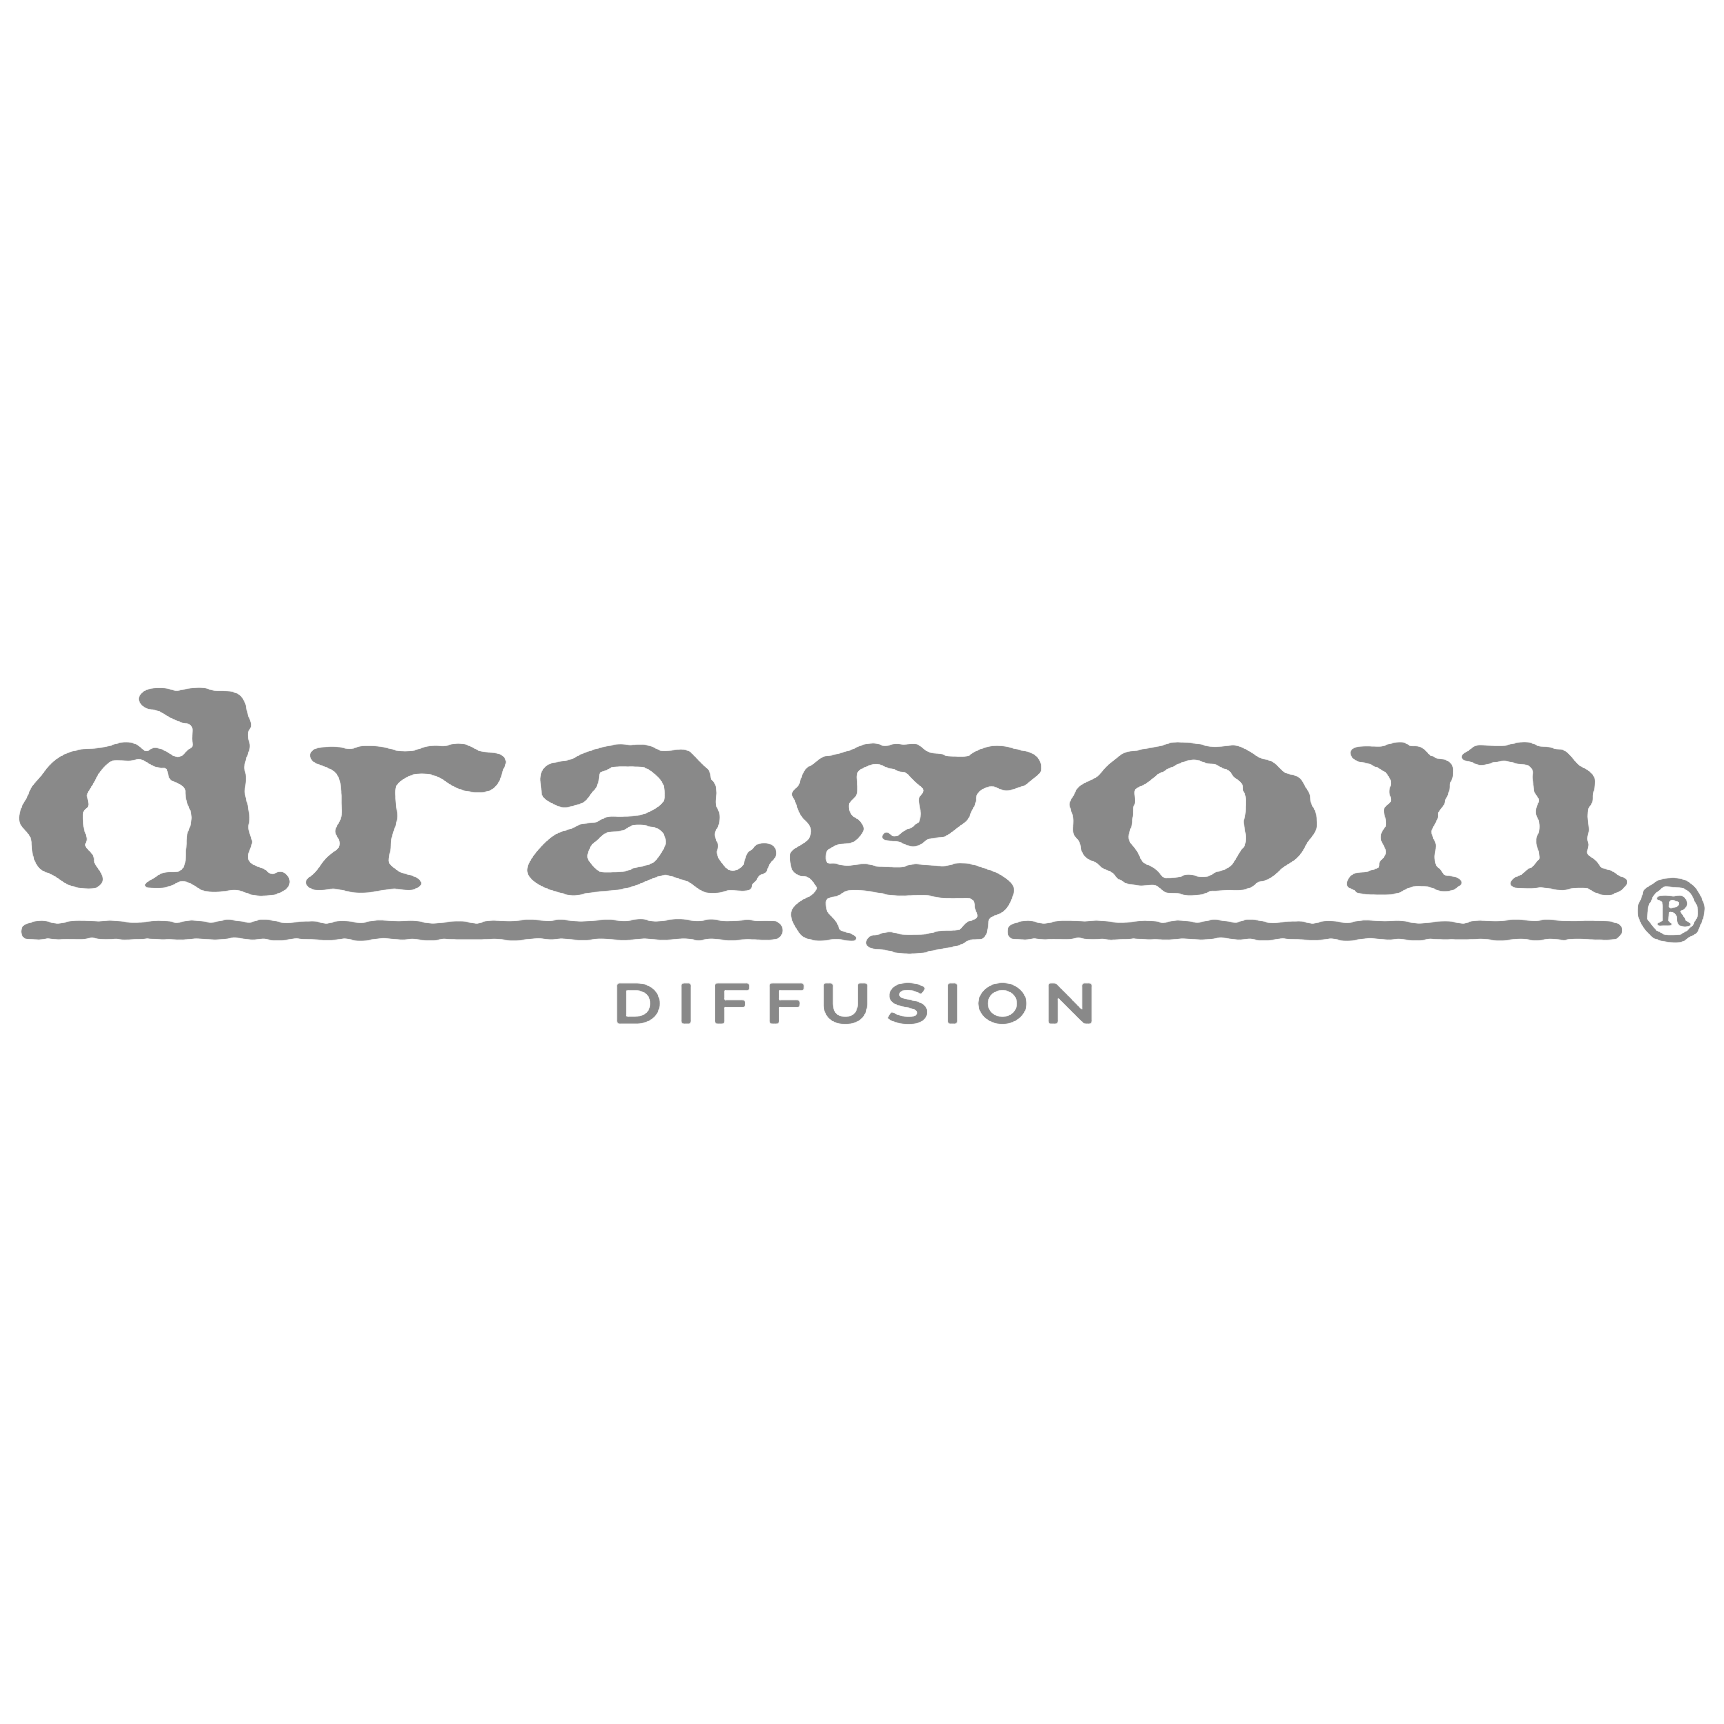 Dragon Diffusion